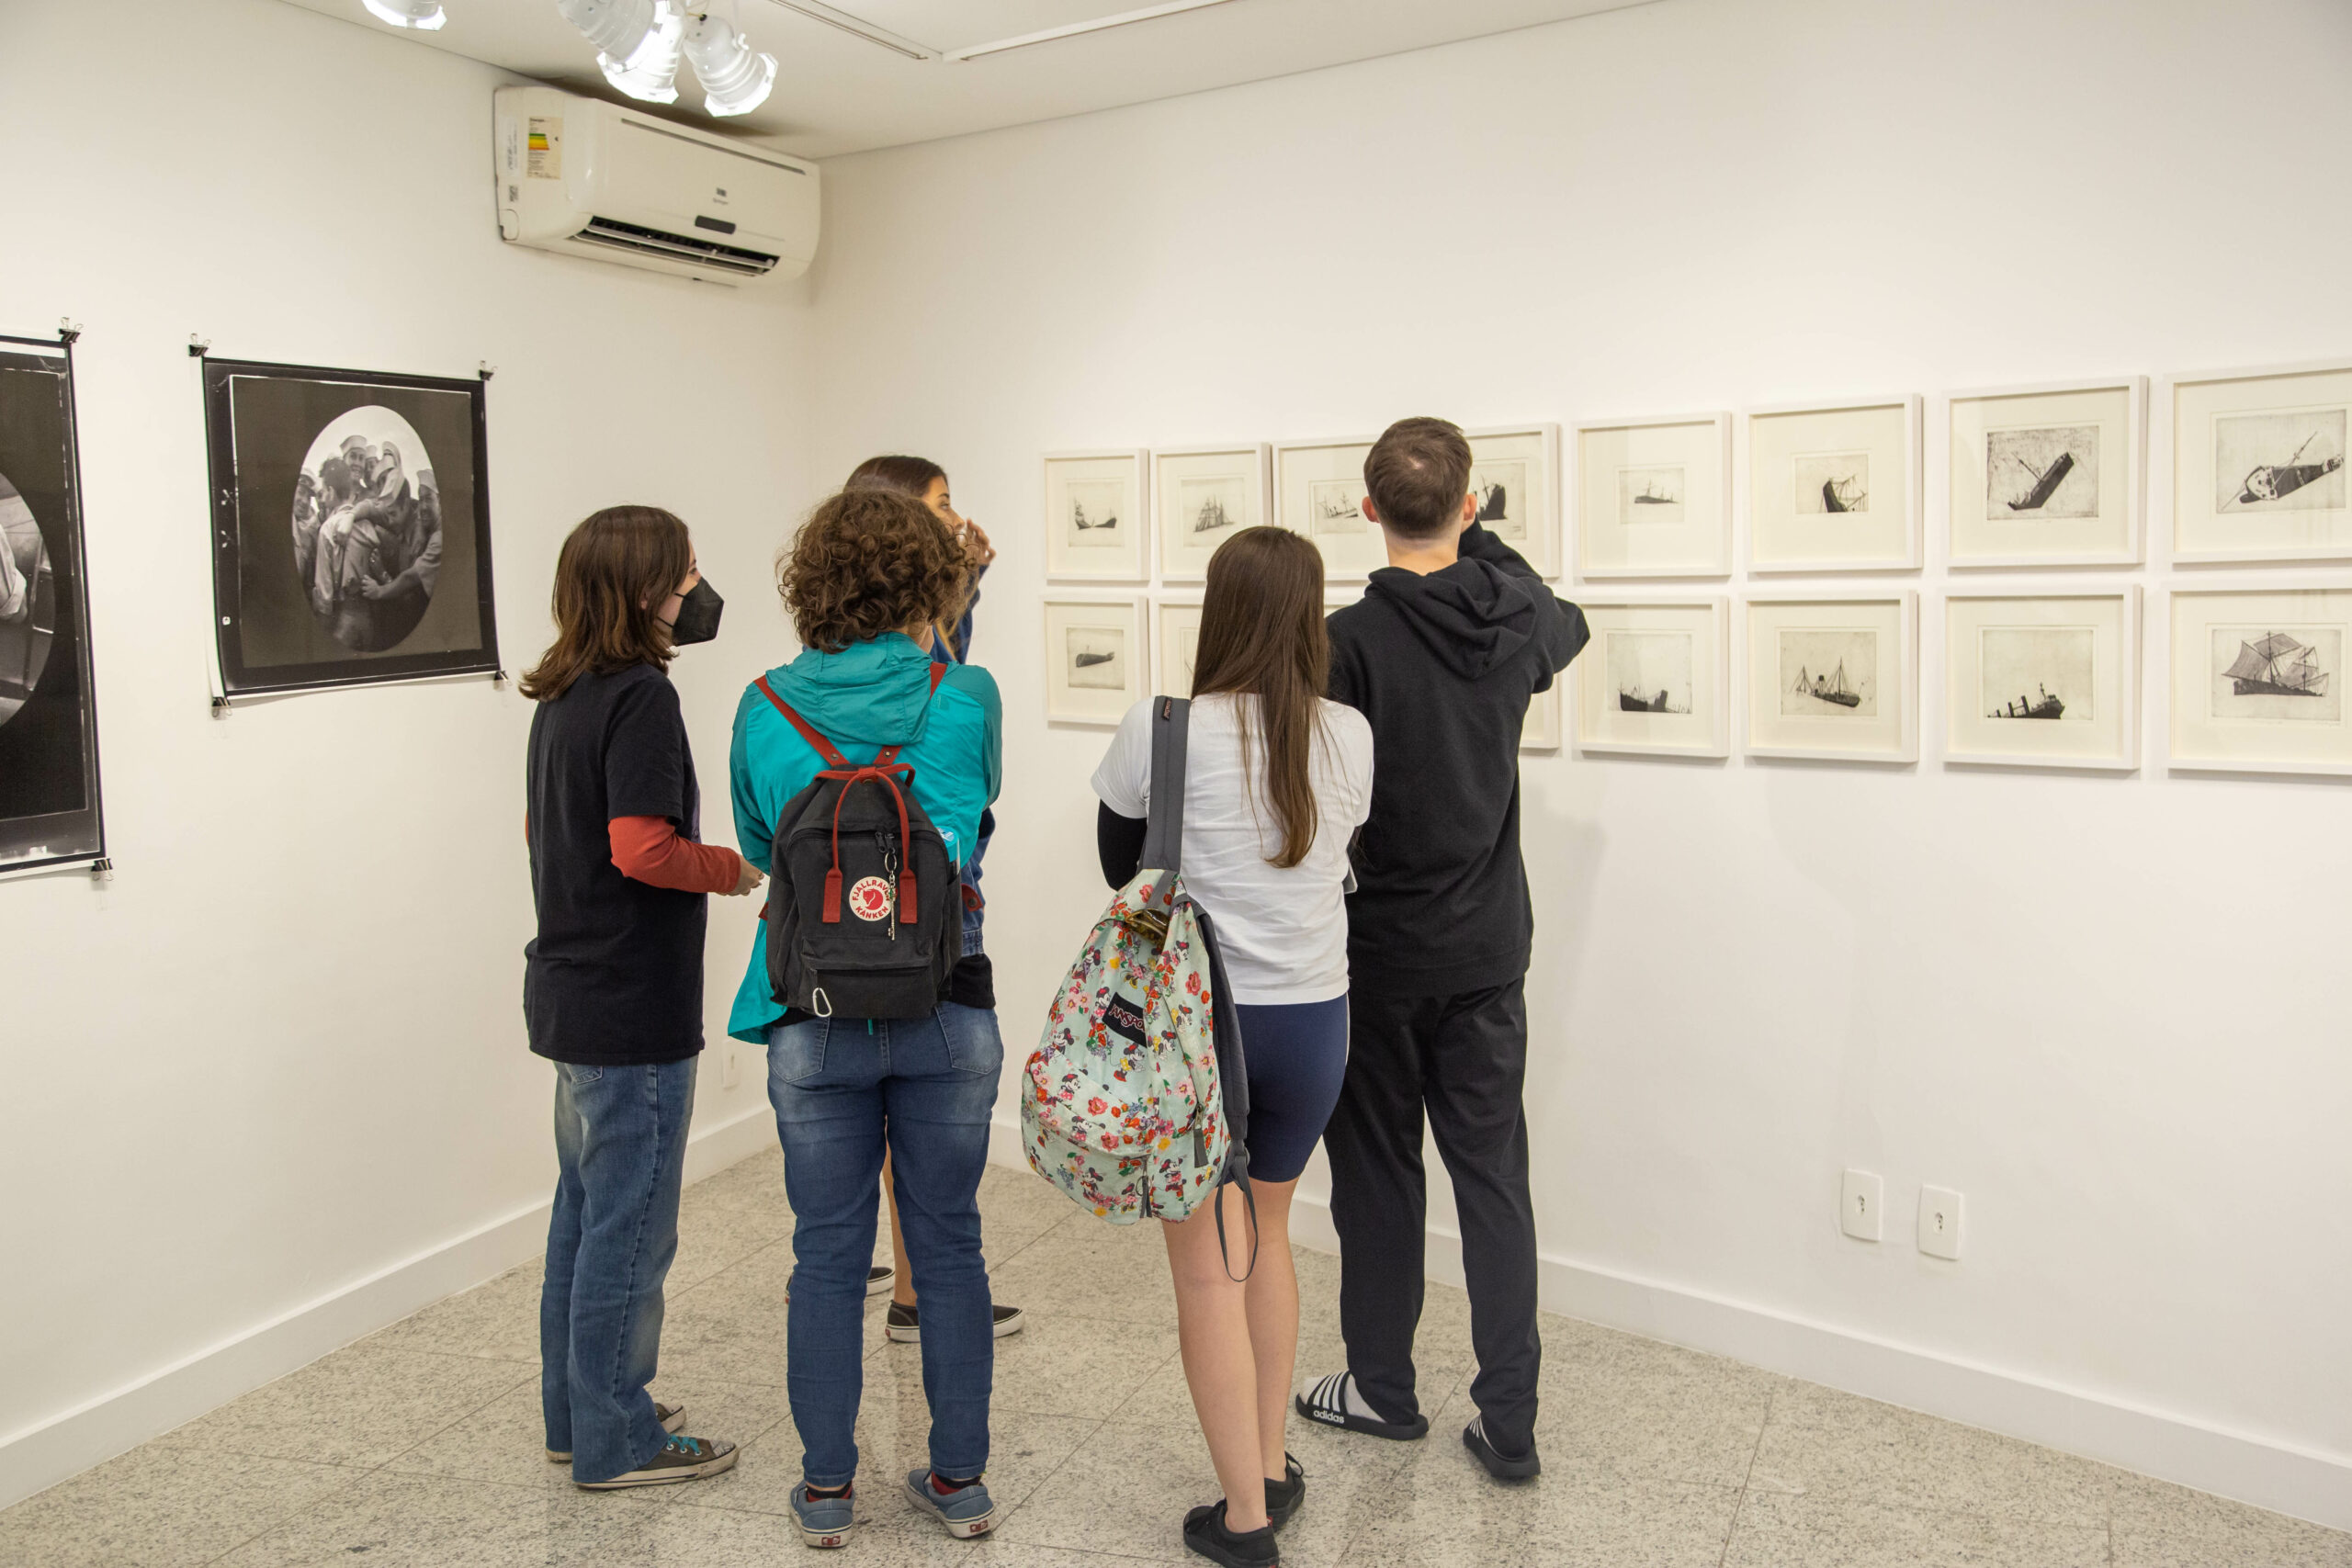 Galeria de Arte do Ibeu reinaugura seu espaço com a exposição “Como sobreviver a um naufrágio”